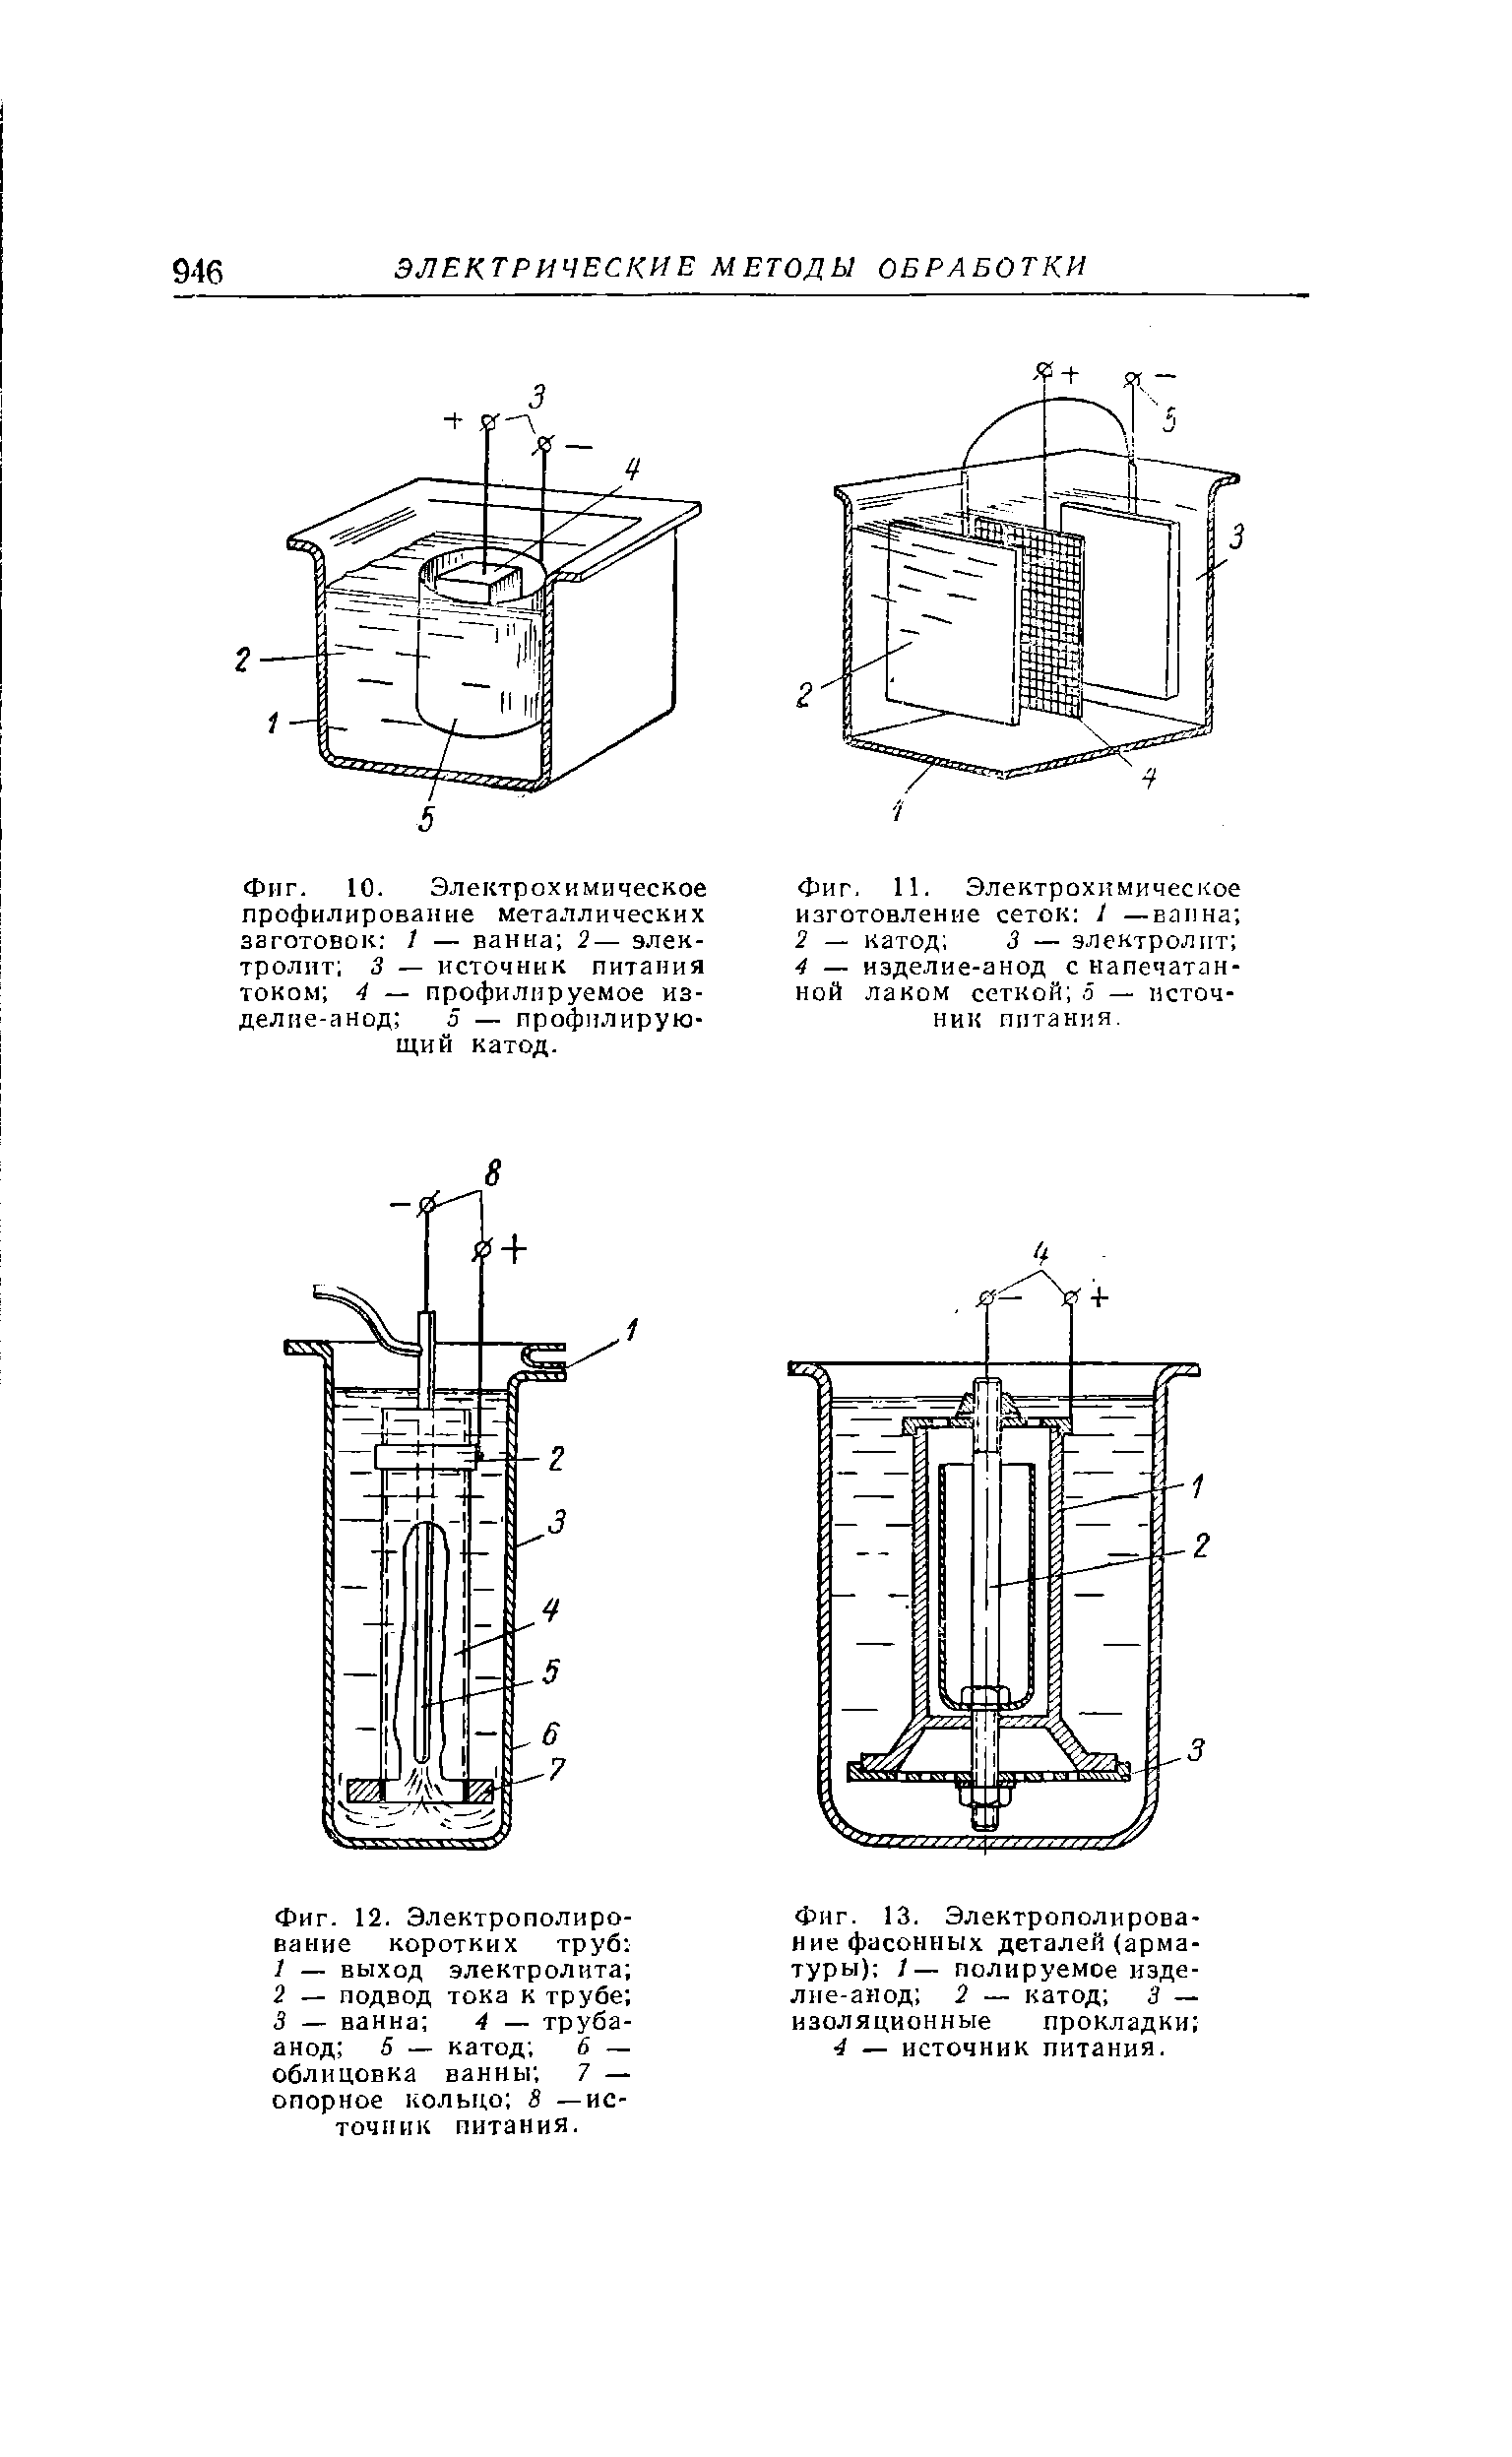 Фиг. 11. Электрохимическое изготовление сеток I —ваина 2 — катод 3 — электролит 4 изделие-анод с напечатанной лаком сеткой 5 — источник питания.
